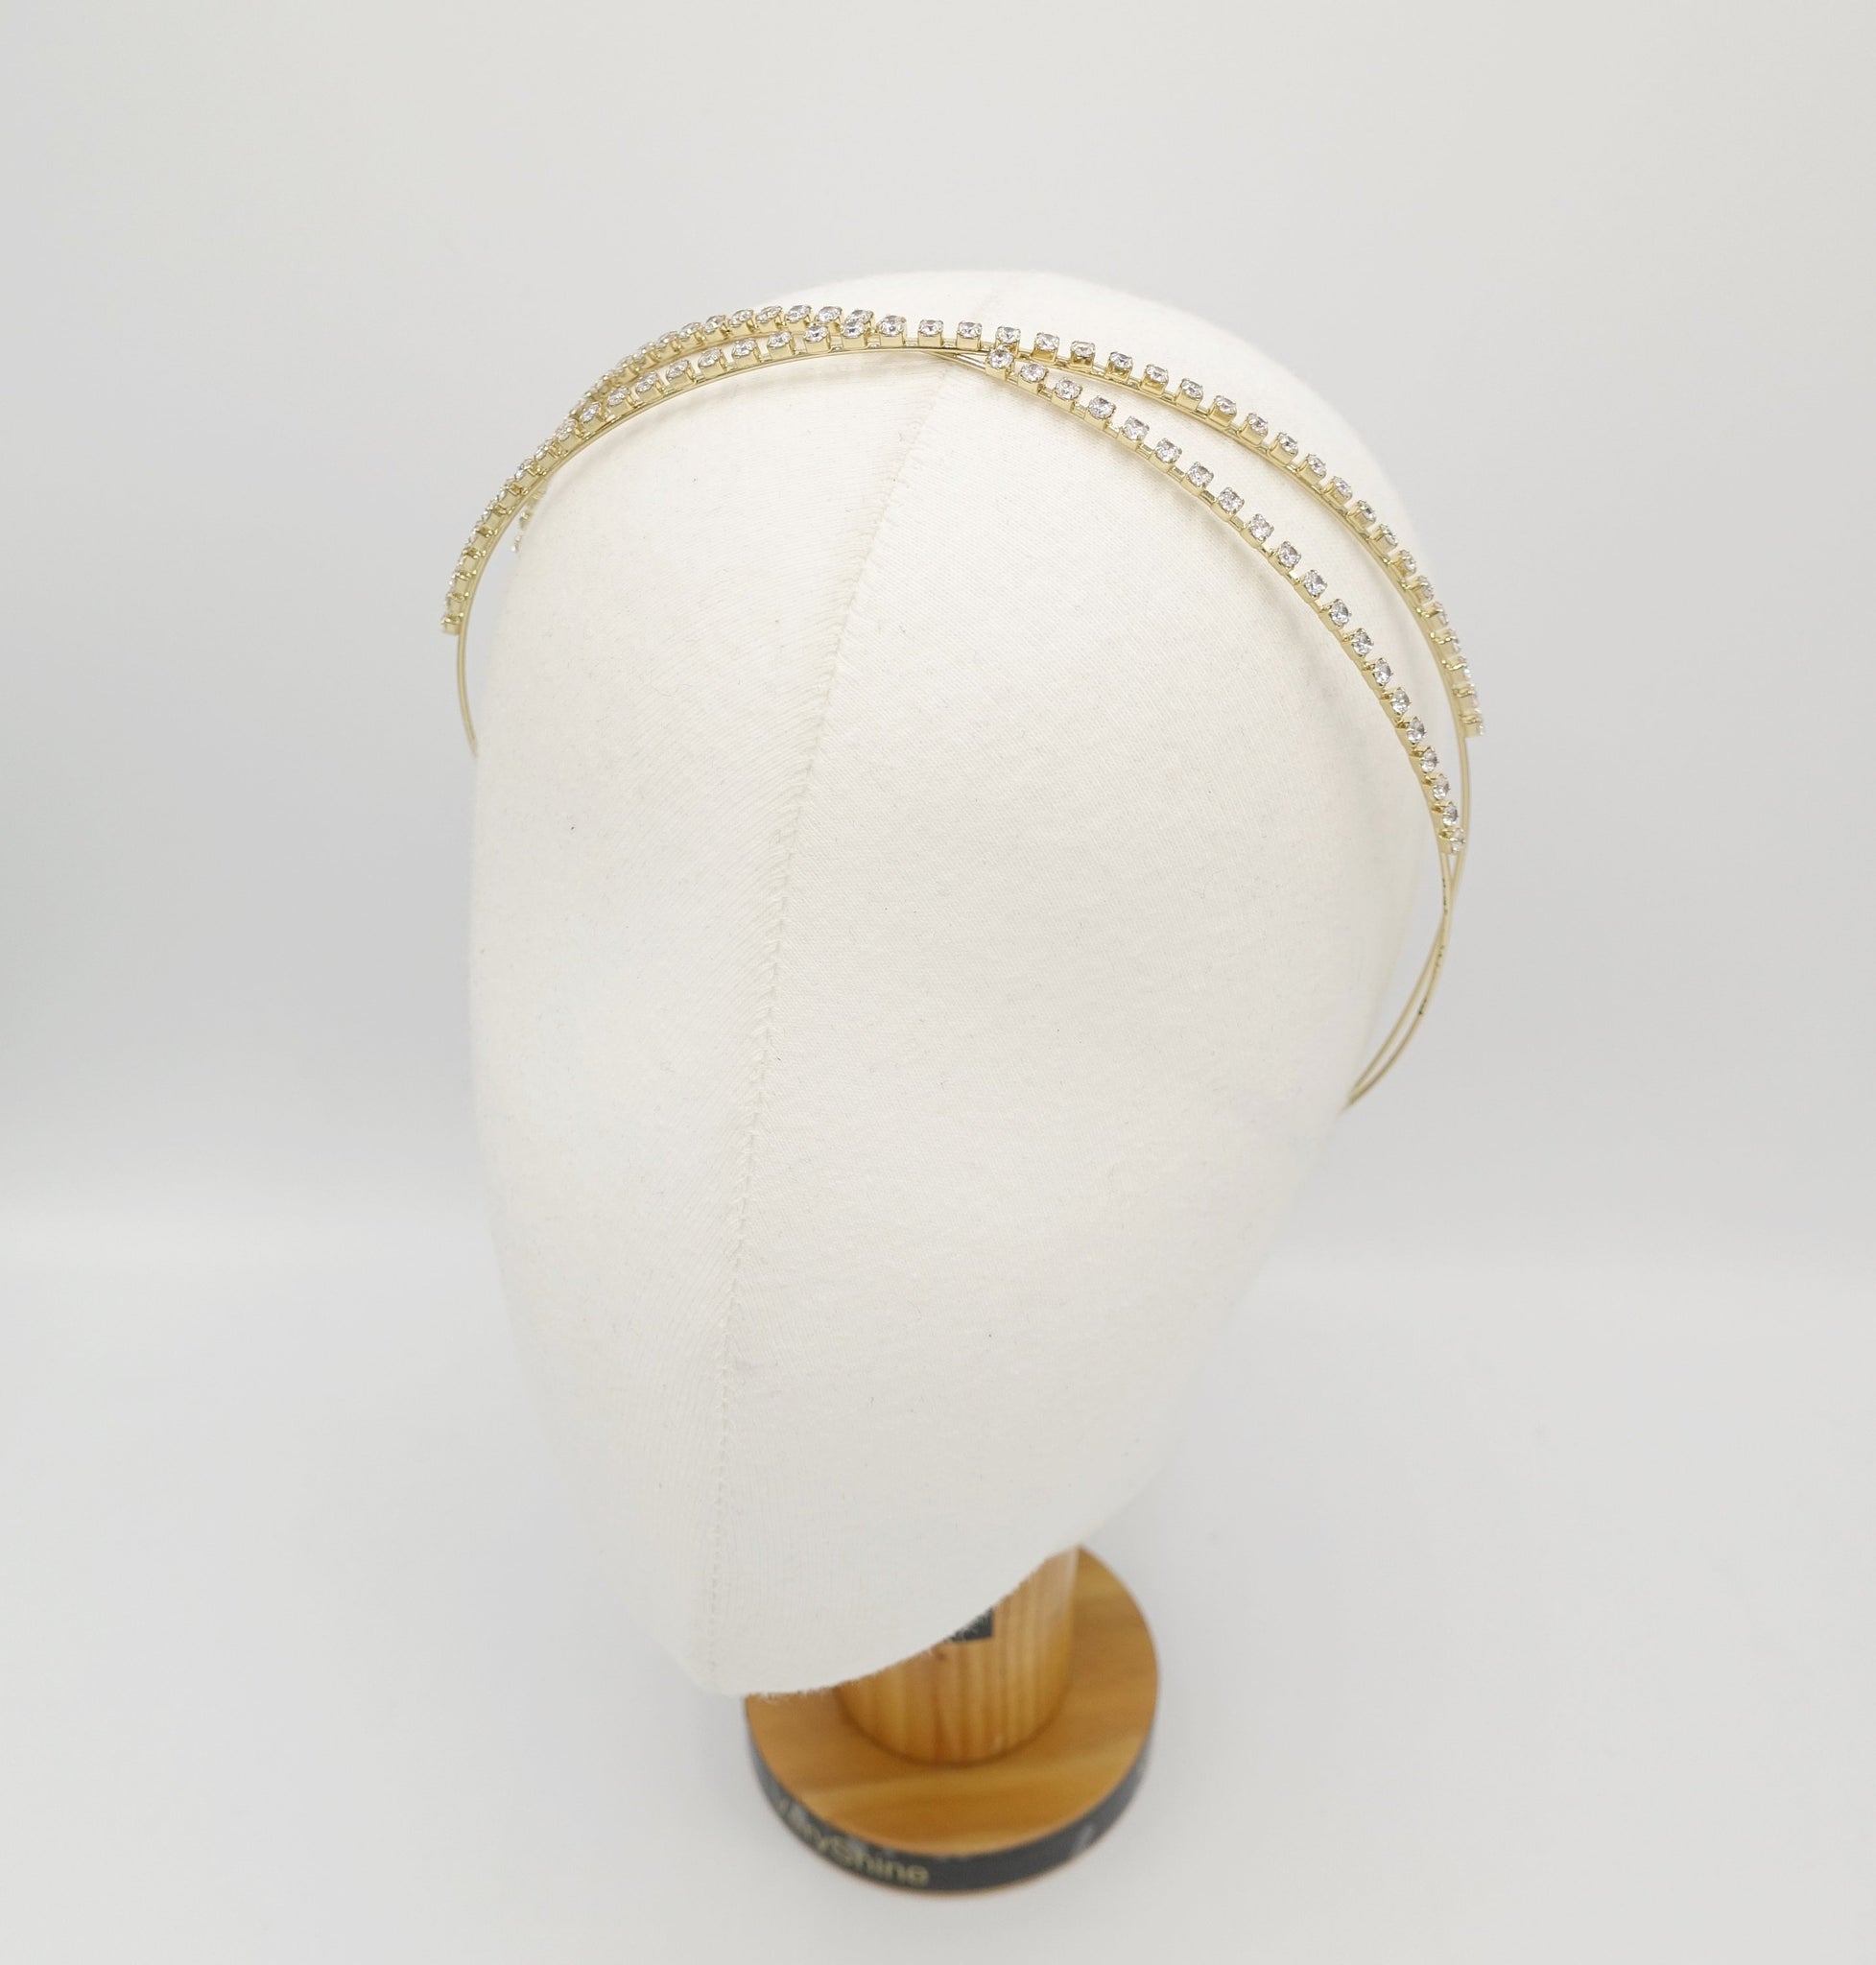 VeryShine Headband Cross gold rhinestone thin headband bling jewel hairband for women